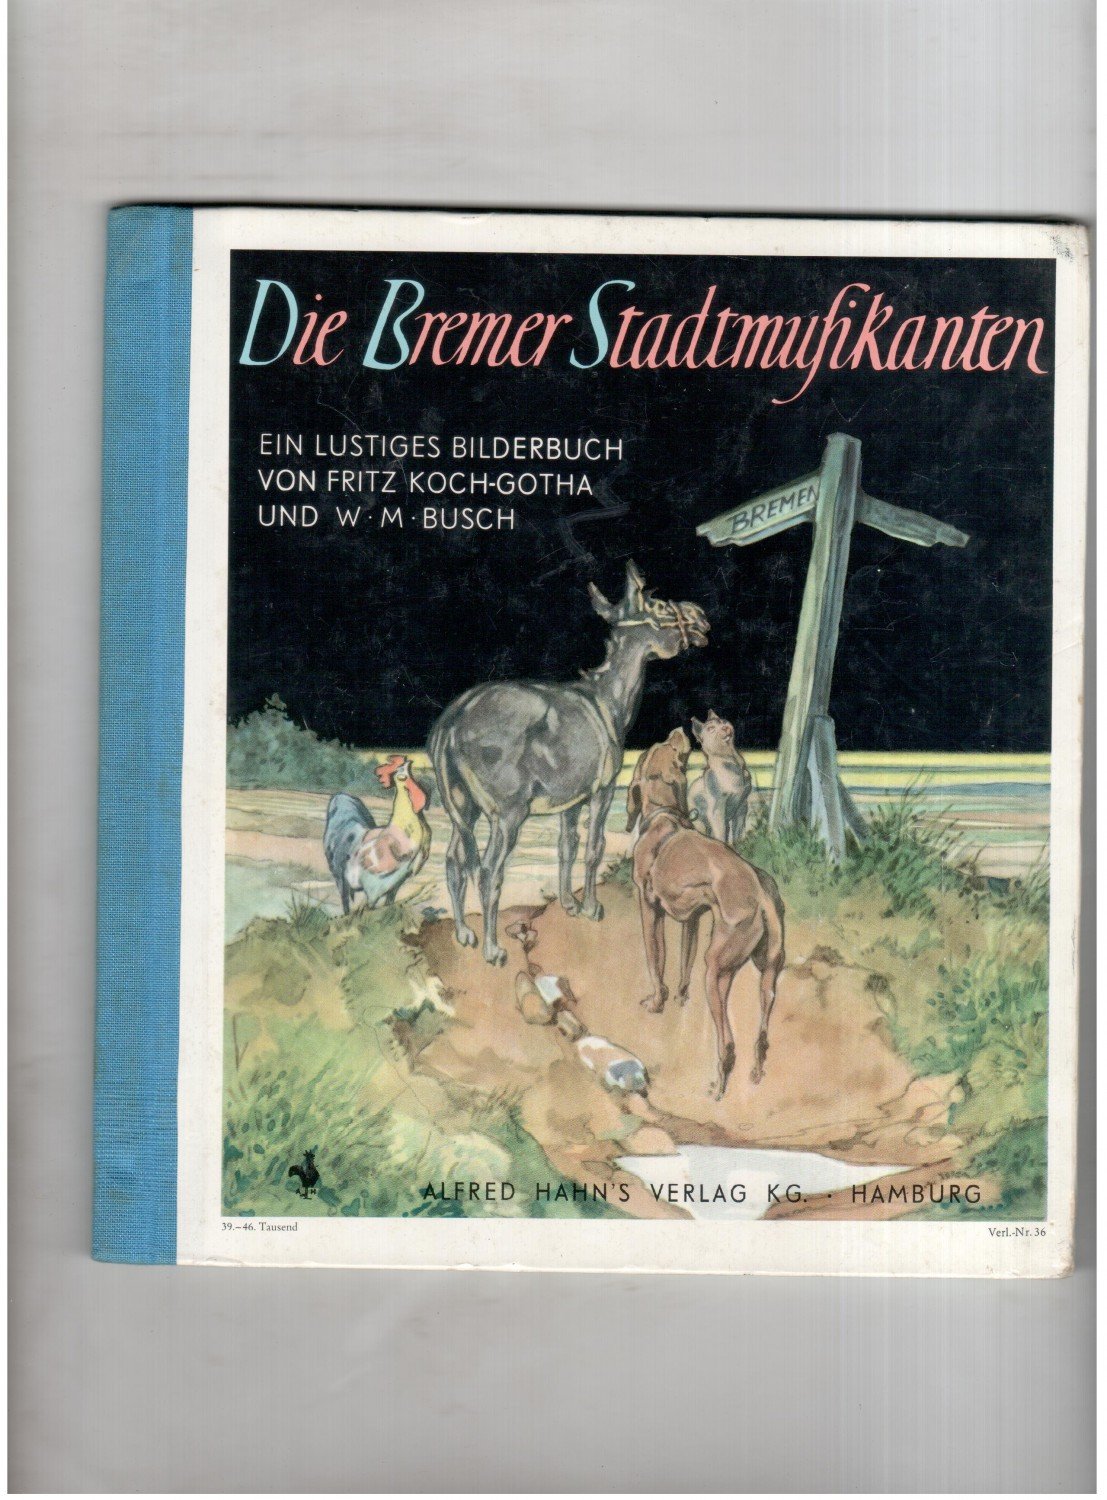 Die Bremer Stadtmusikanten - Ein Lustiges Bilderbuch - Fritz Koch-Gotha und W. M. Busch